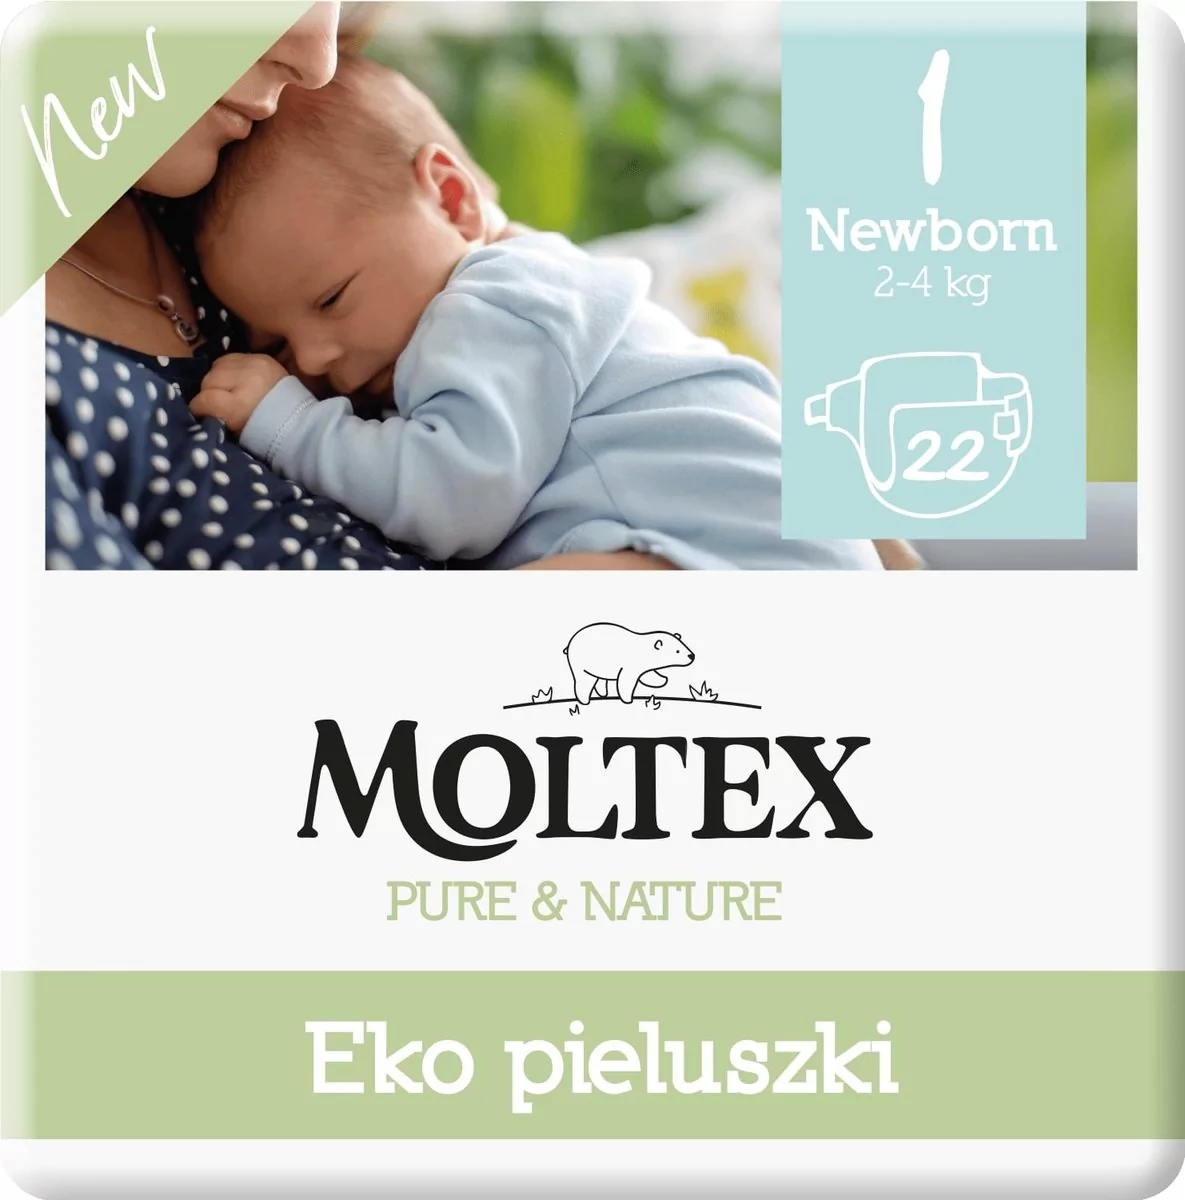 Moltex pieluchy Pure & Nature Newborn 2 4 kg 22 szt.)